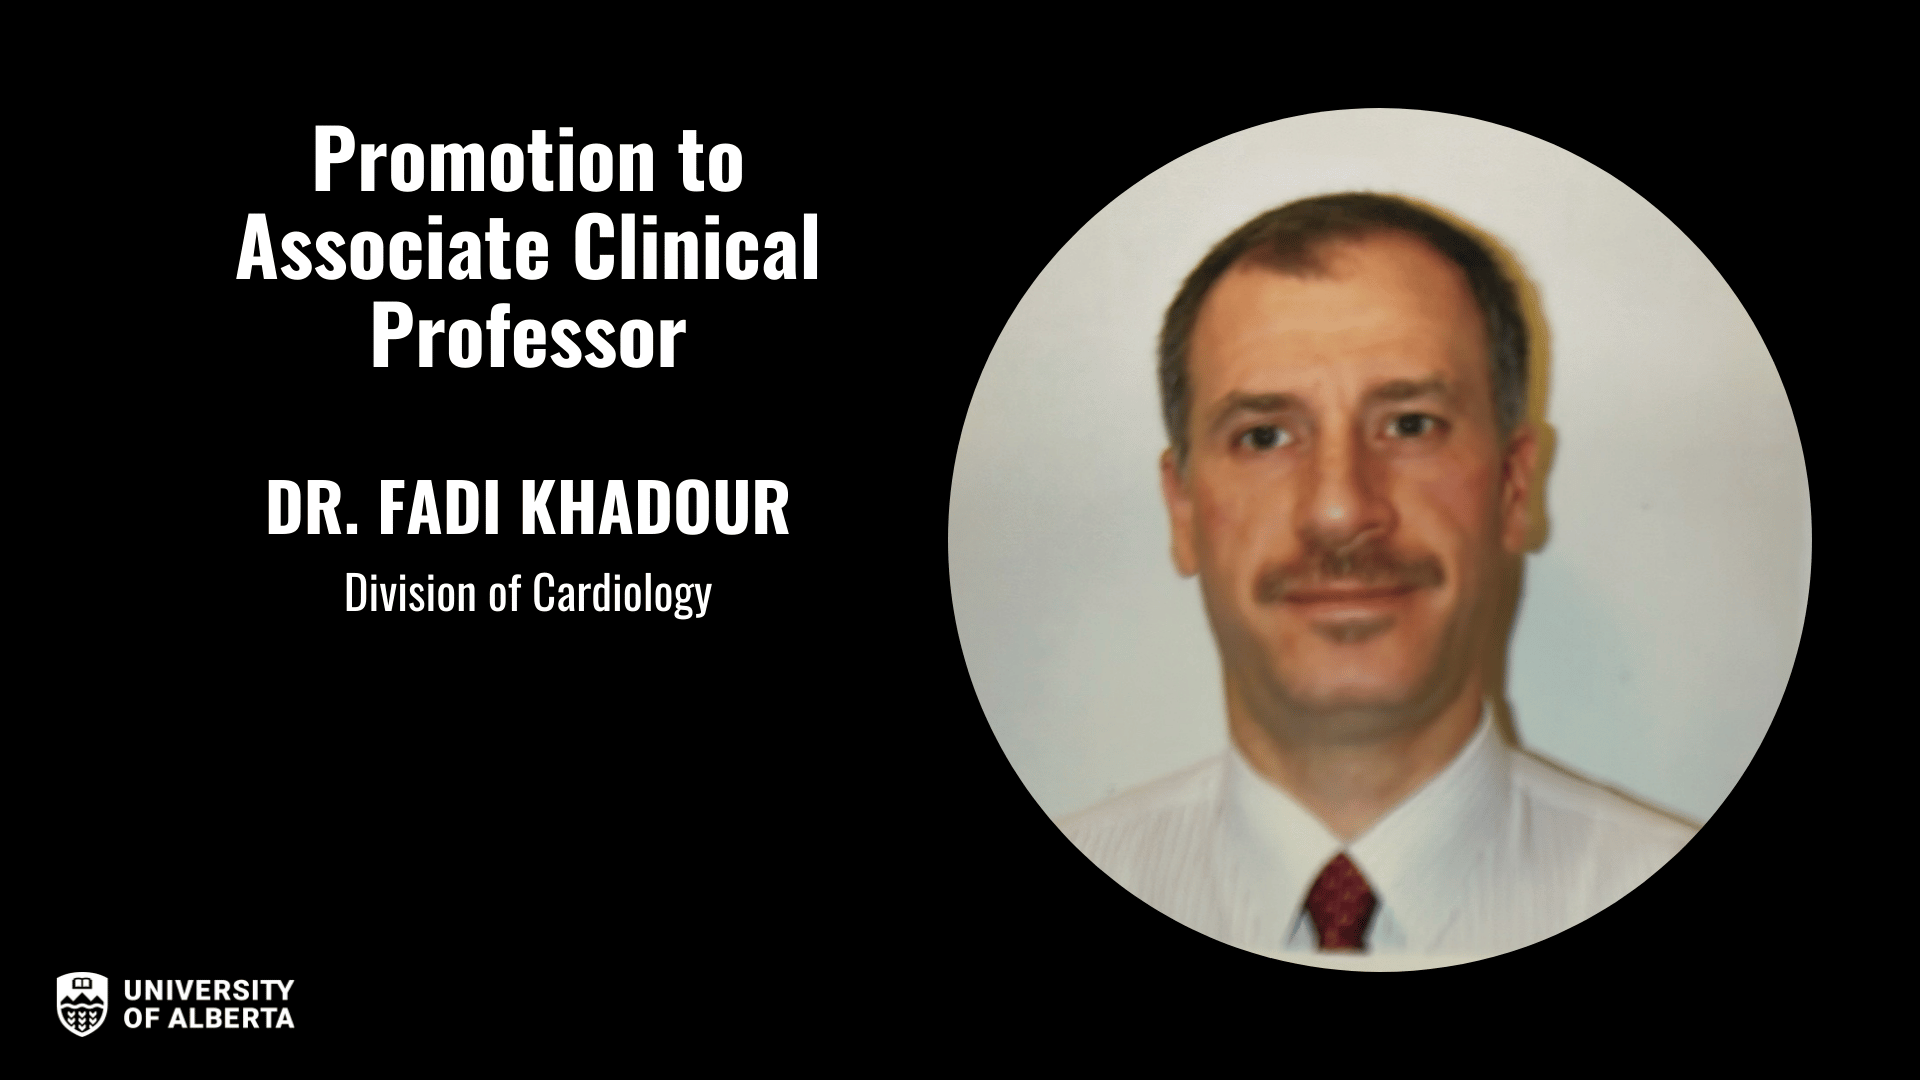 Dr. Fadi Khadour